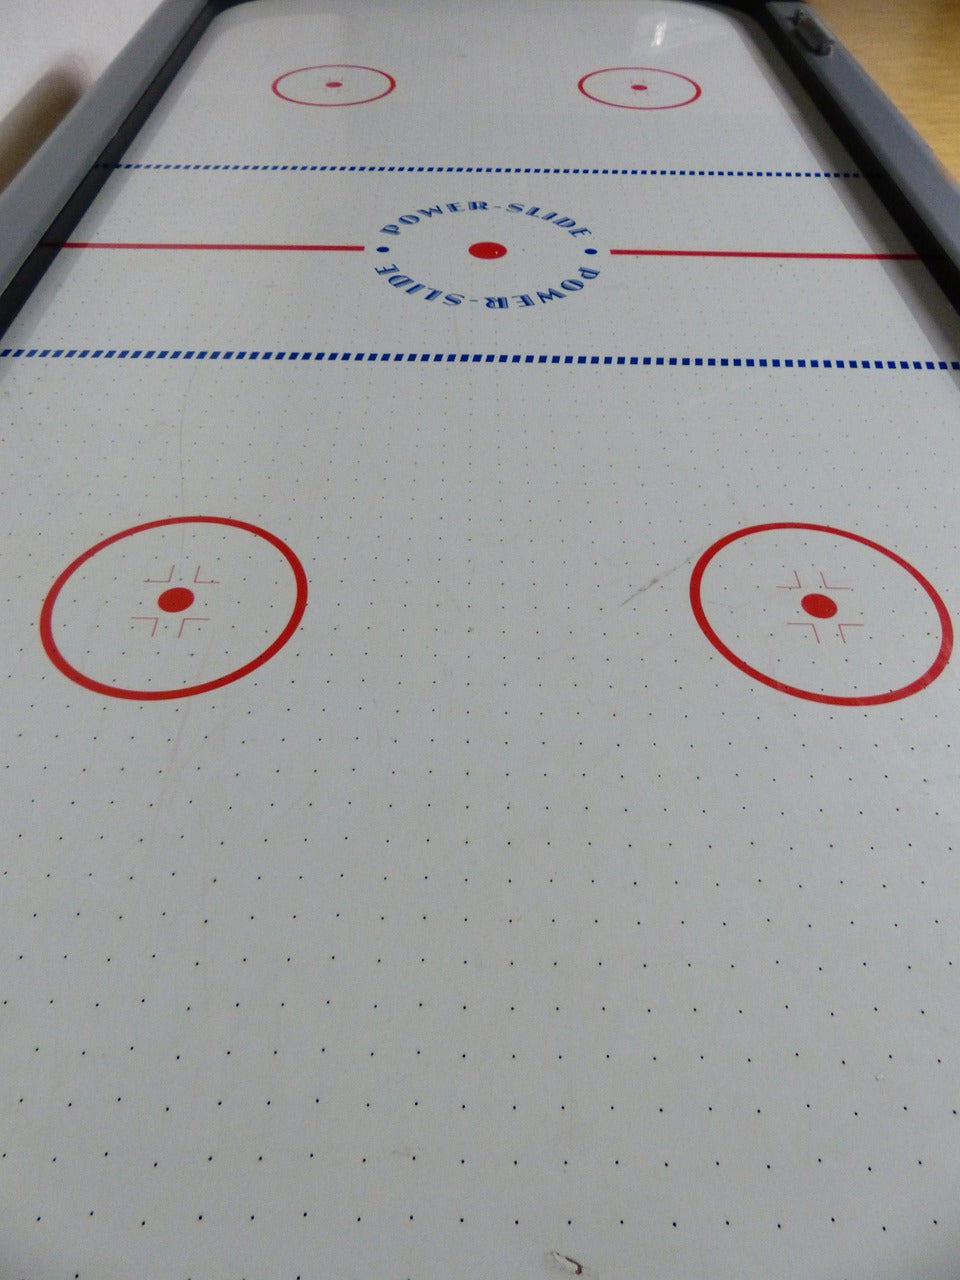 ✔️ Des heures de compétition amicale à la maison. ✔️ Le hockey sur table prend une nouvelle dimension. ✔️ Un design de qualité pour des parties palpitantes.  Explorez notre gamme de jeux de table de hockey sur LaBoutike dès aujourd'hui !  #JeuxDeTableHockey #TableDeHockey #LaBoutike #CompétitionAmicale #DivertissementÀLaMaison #FunEnFamille #HockeySurTable #JeuxD'intérieur #QualitéDeJeu